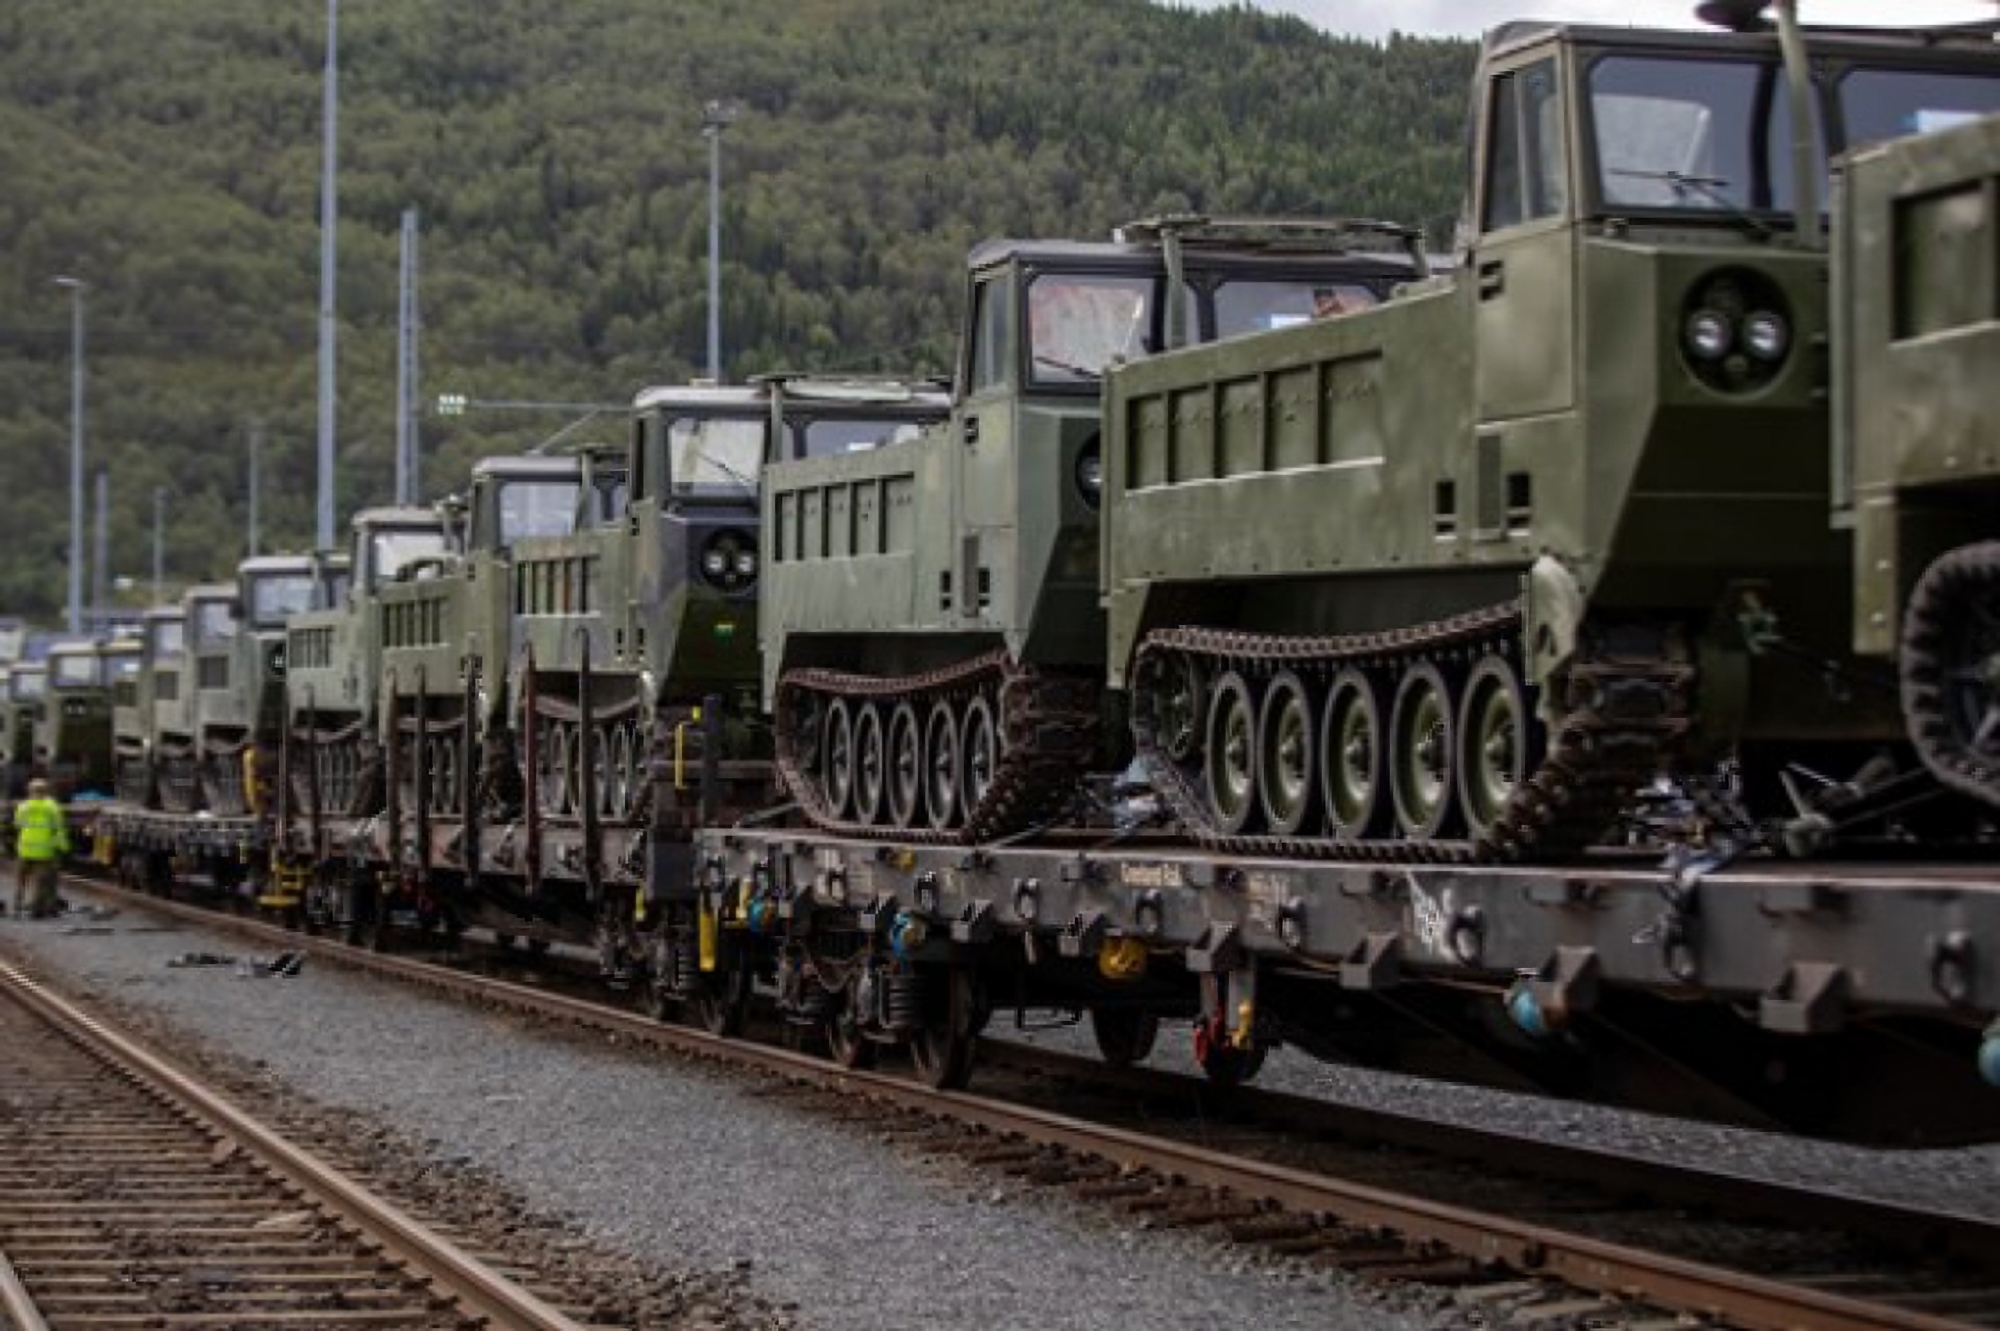 Noorwegen draagt 50 M548 rupstransporters over aan de AFU, ze zijn gebaseerd op de M113 APC.